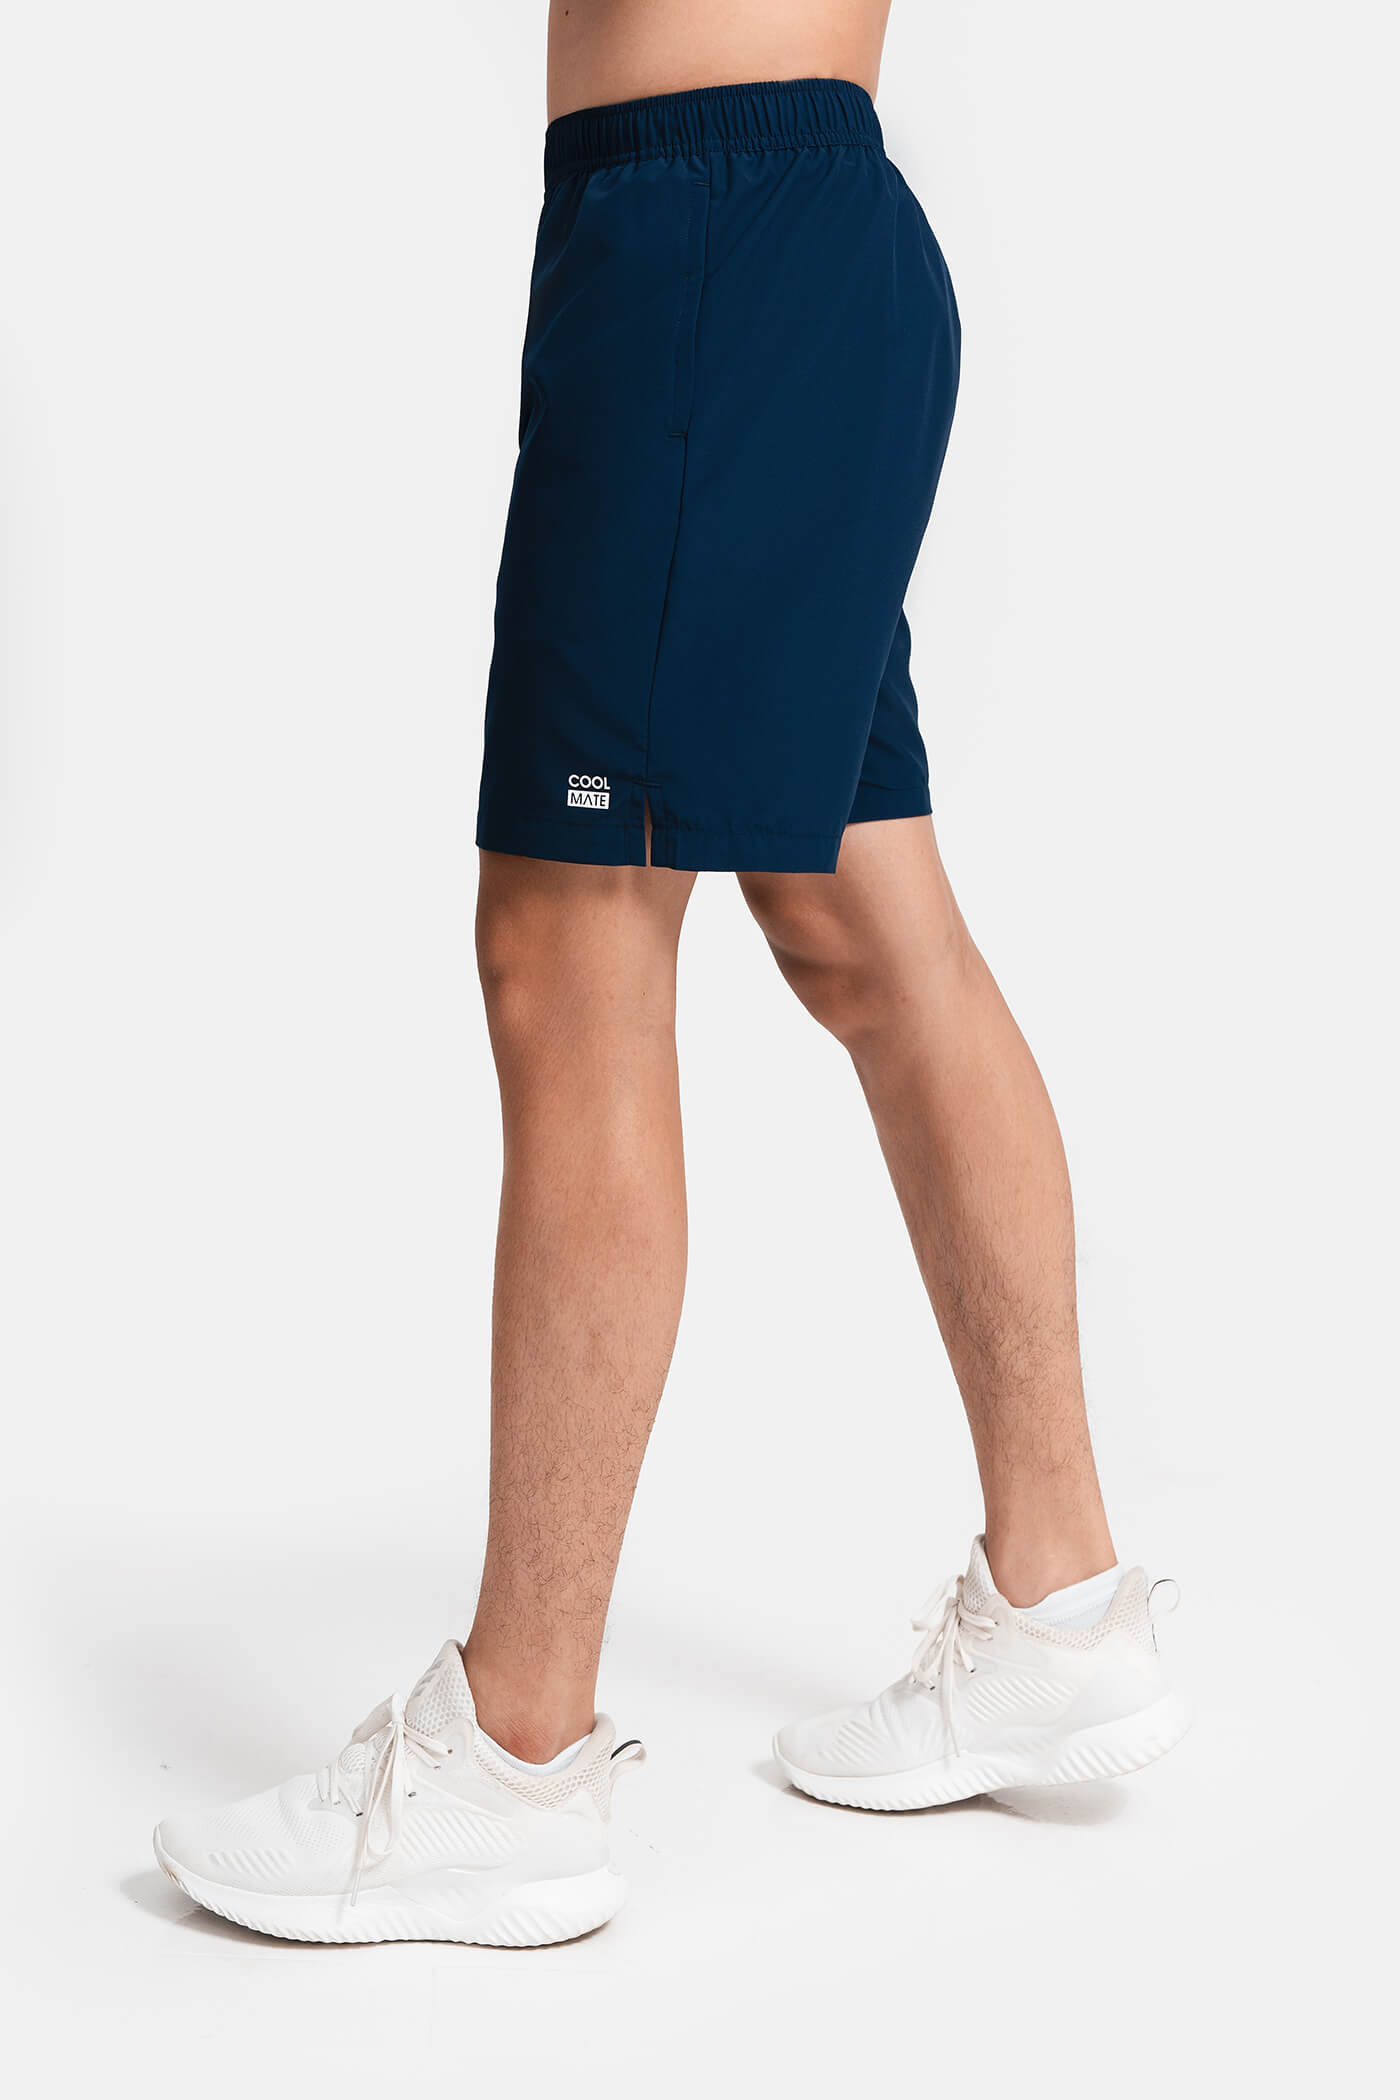 Quần shorts nam thể thao Recycle 7" V2 (túi sau có khóa kéo) Xanh navy 2